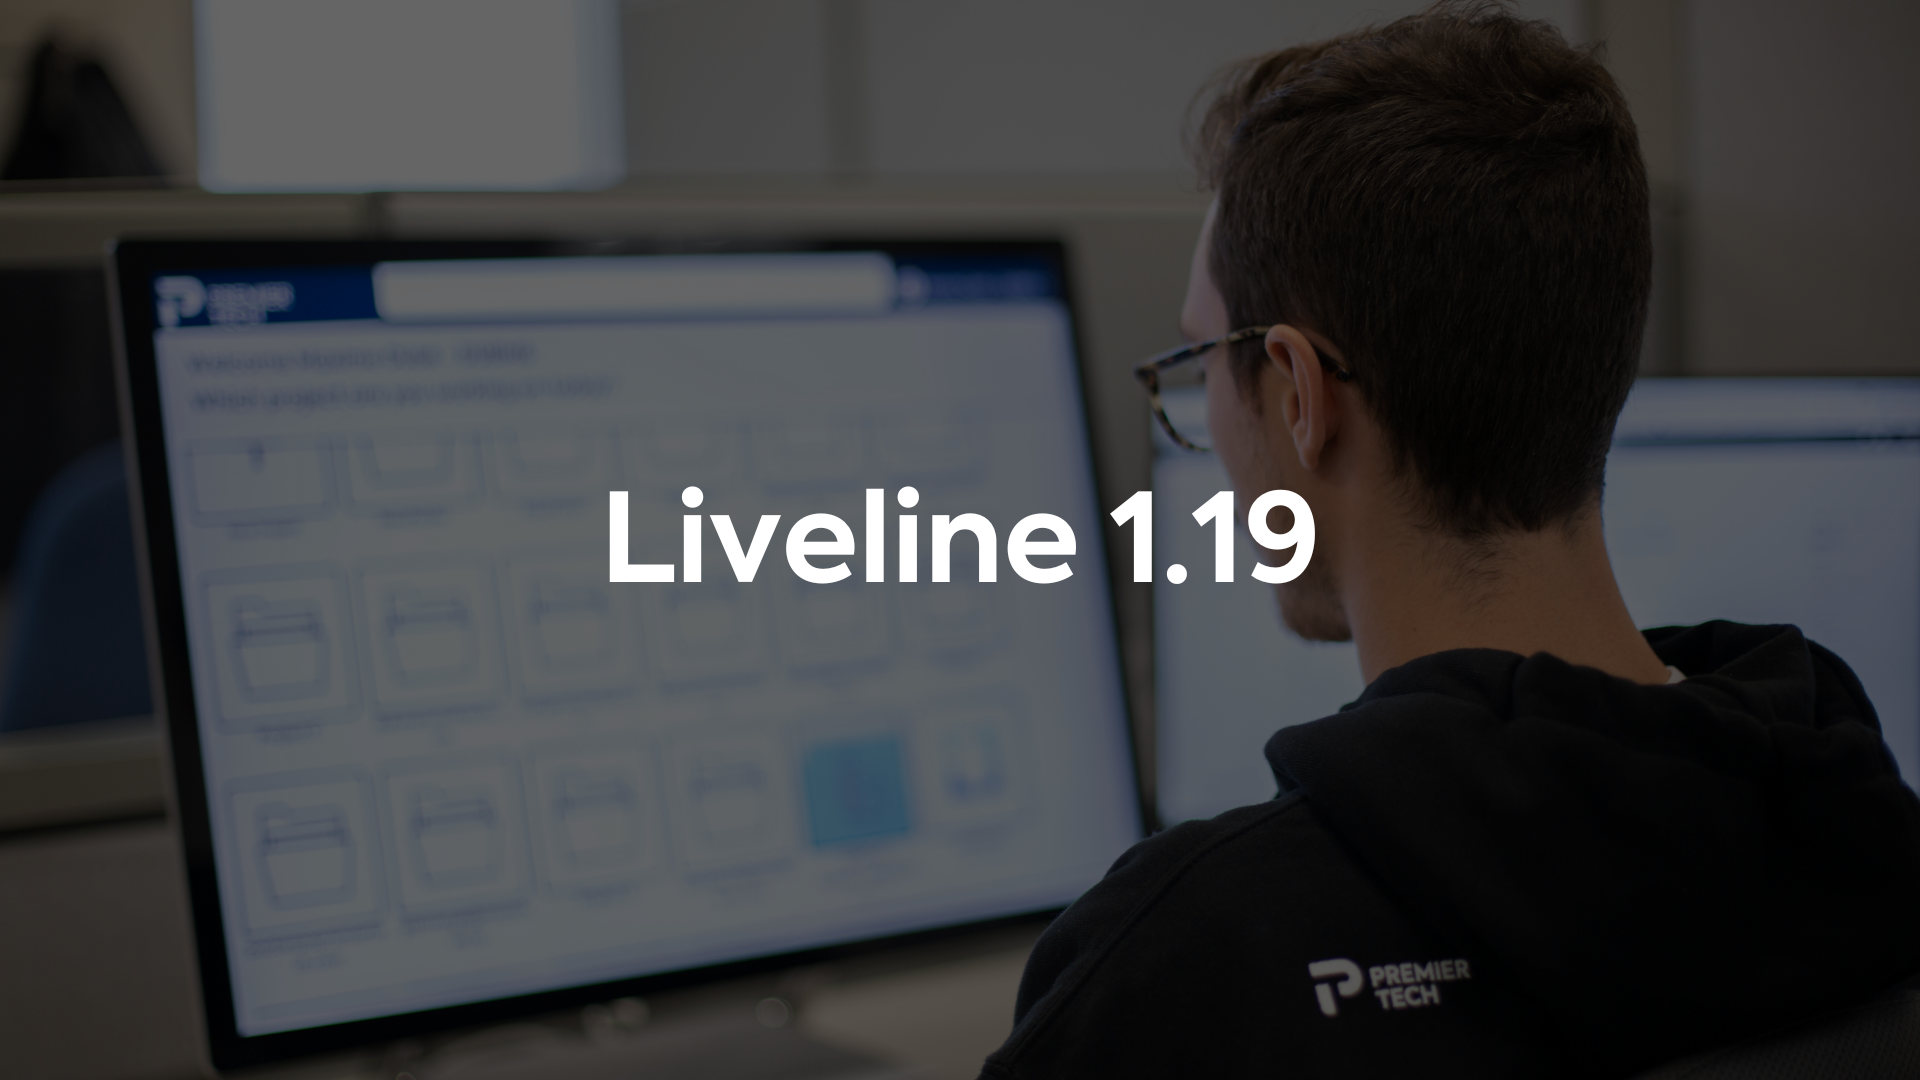 Liveline 1.19